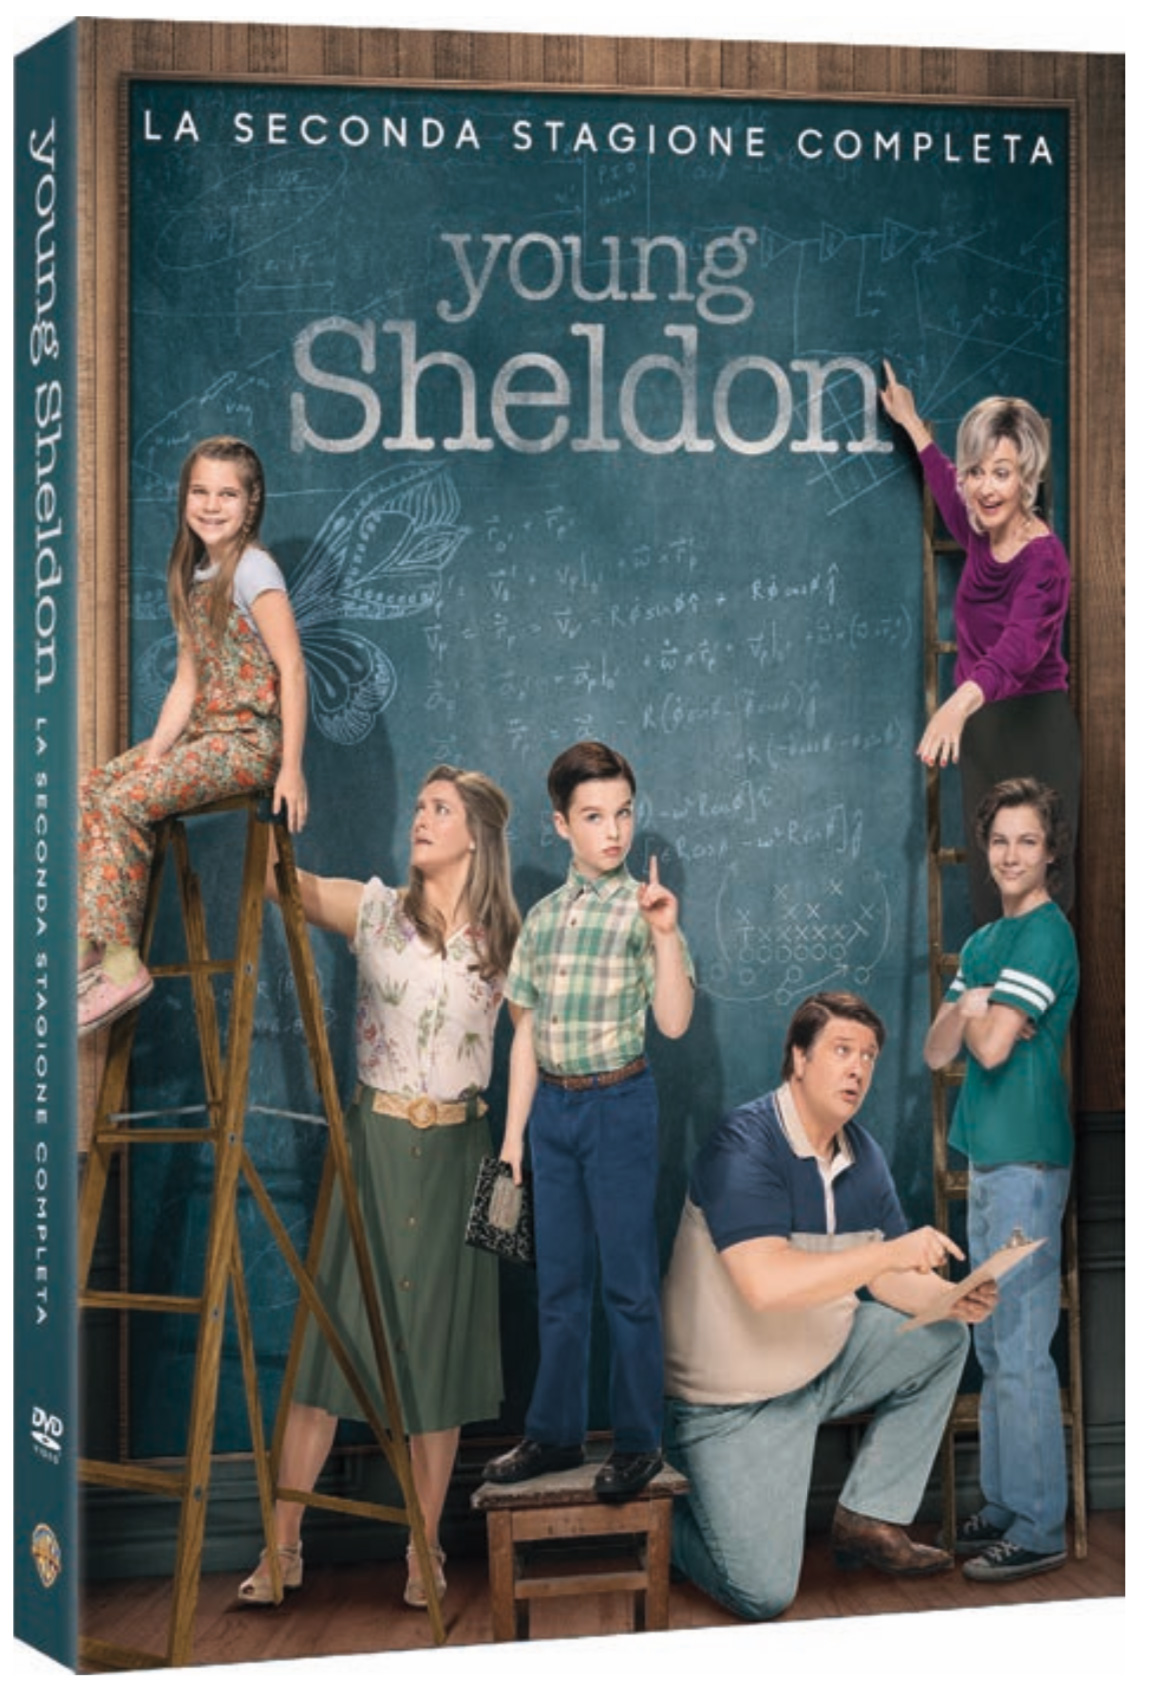 Young Sheldon - La seconda stagione completa